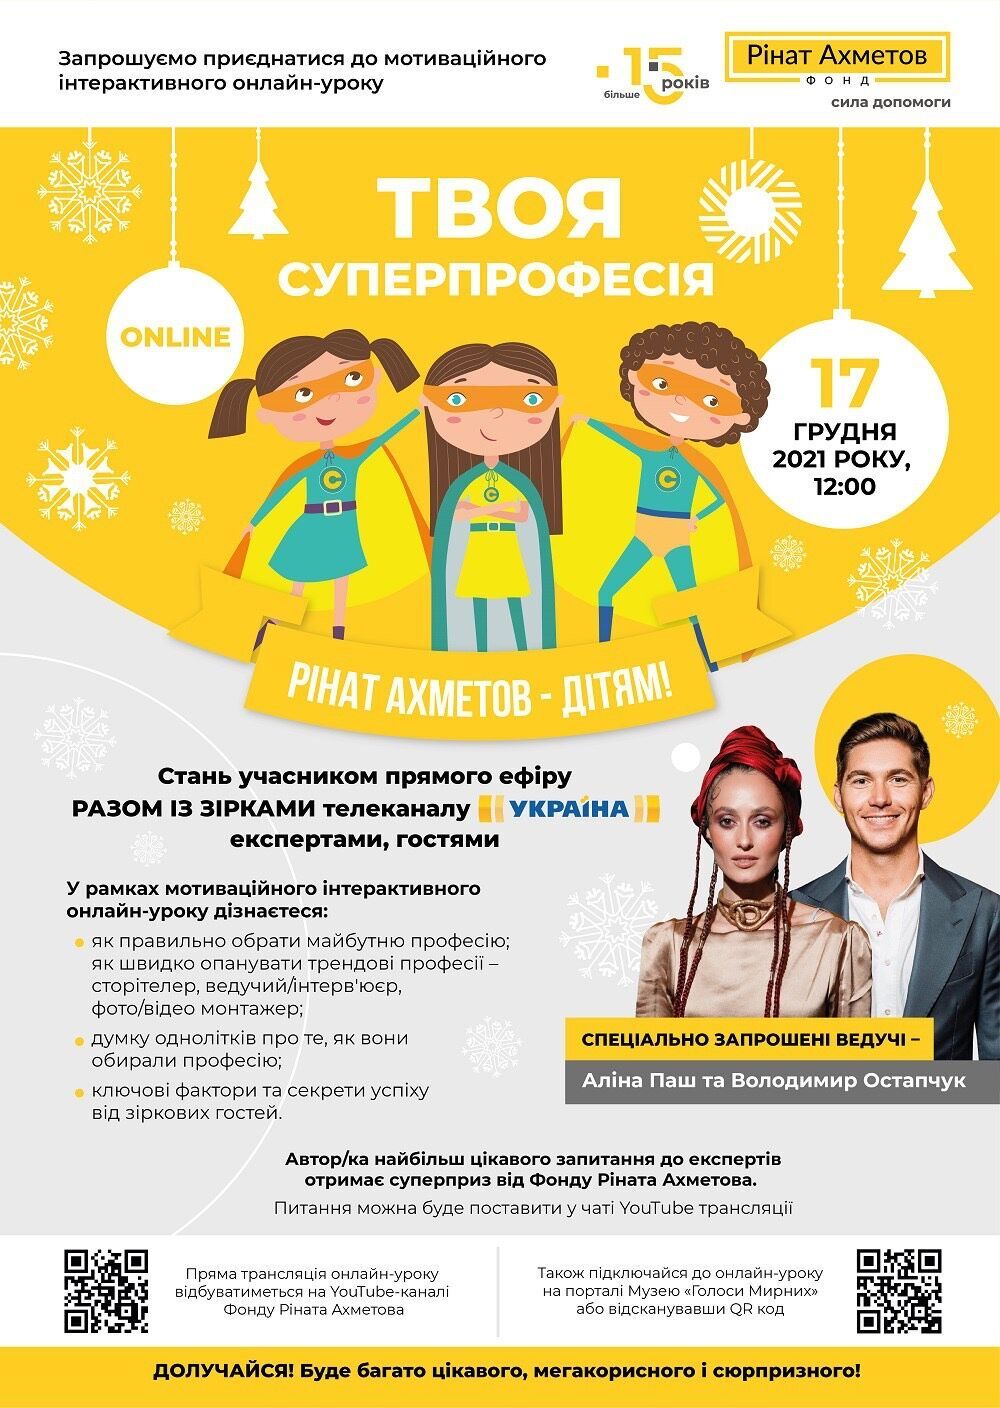 Фонд Ріната Ахметова проведе всеукраїнський інтерактивний онлайн-урок "Твоя суперпрофесія"